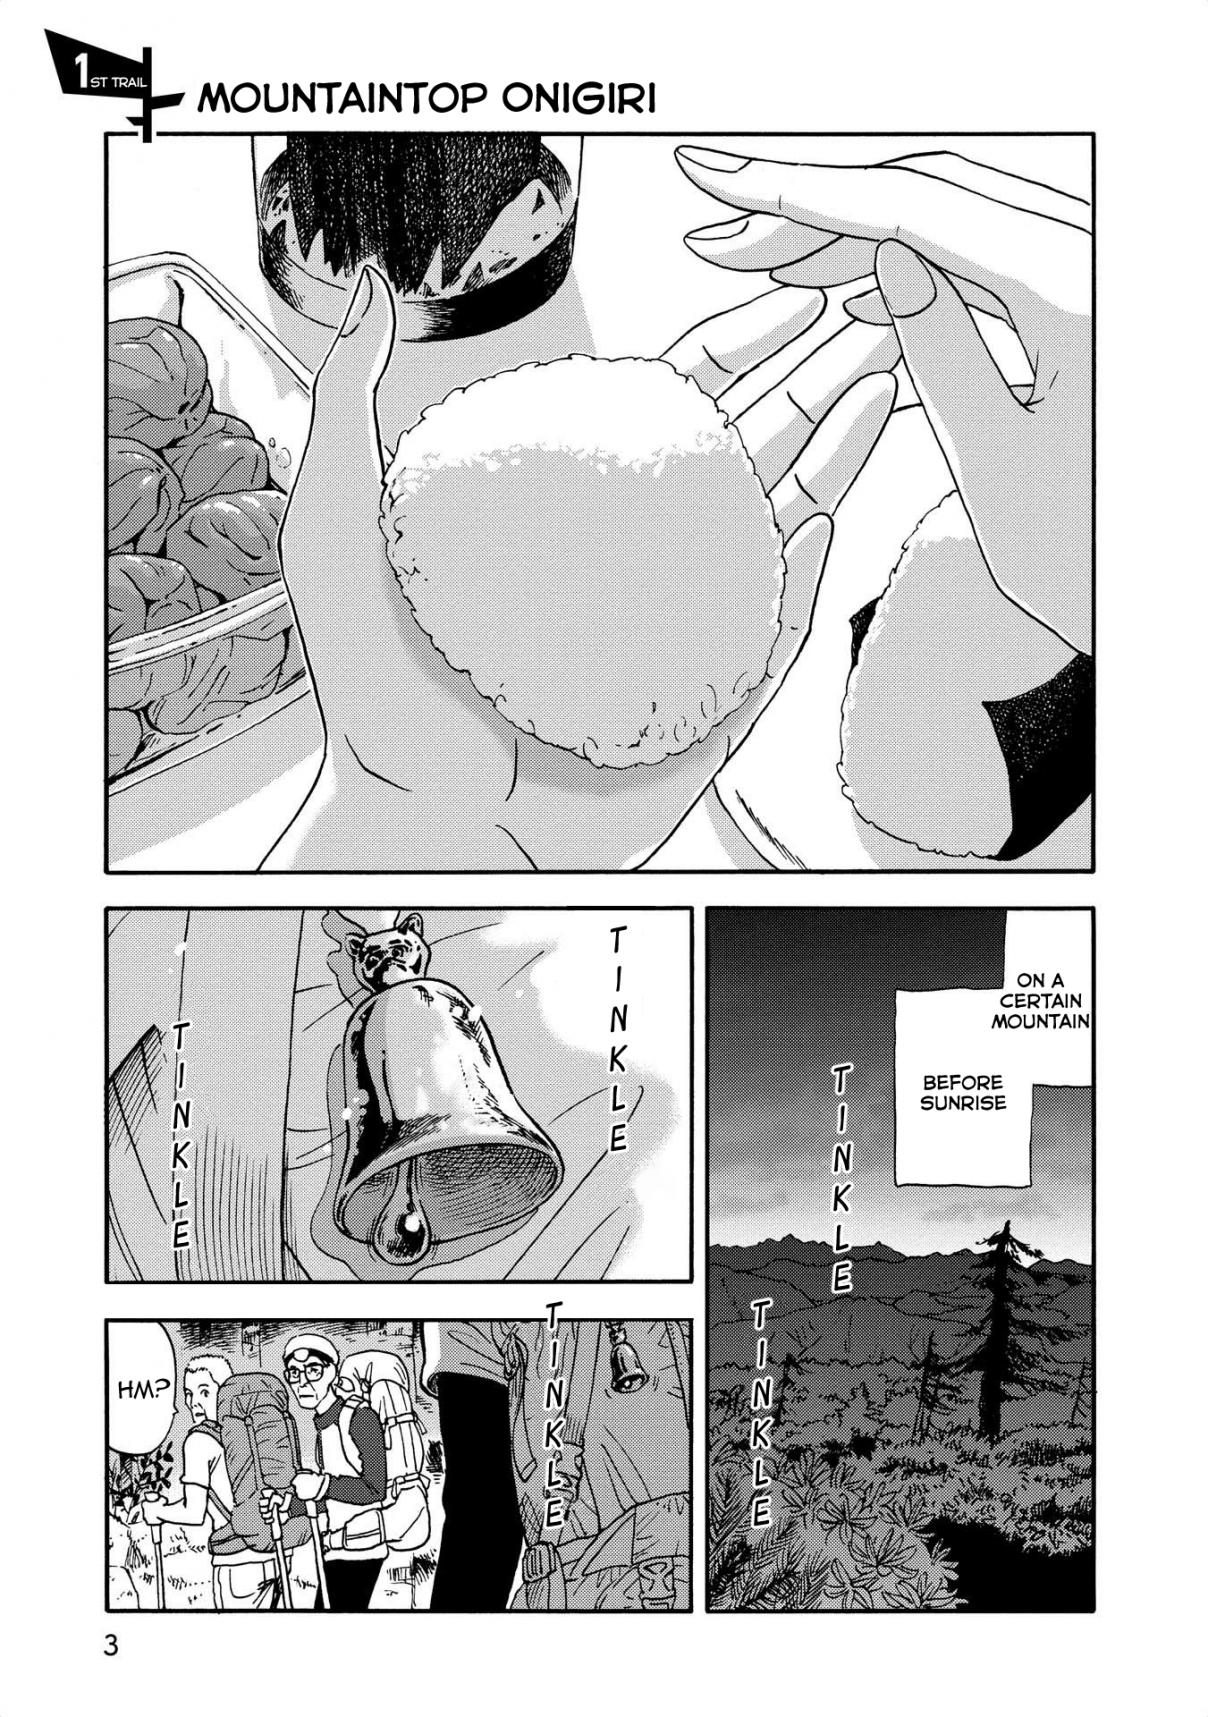 Yama to Shokuyoku to Watashi Vol. 1 Ch. 1 Mountaintop Onigiri